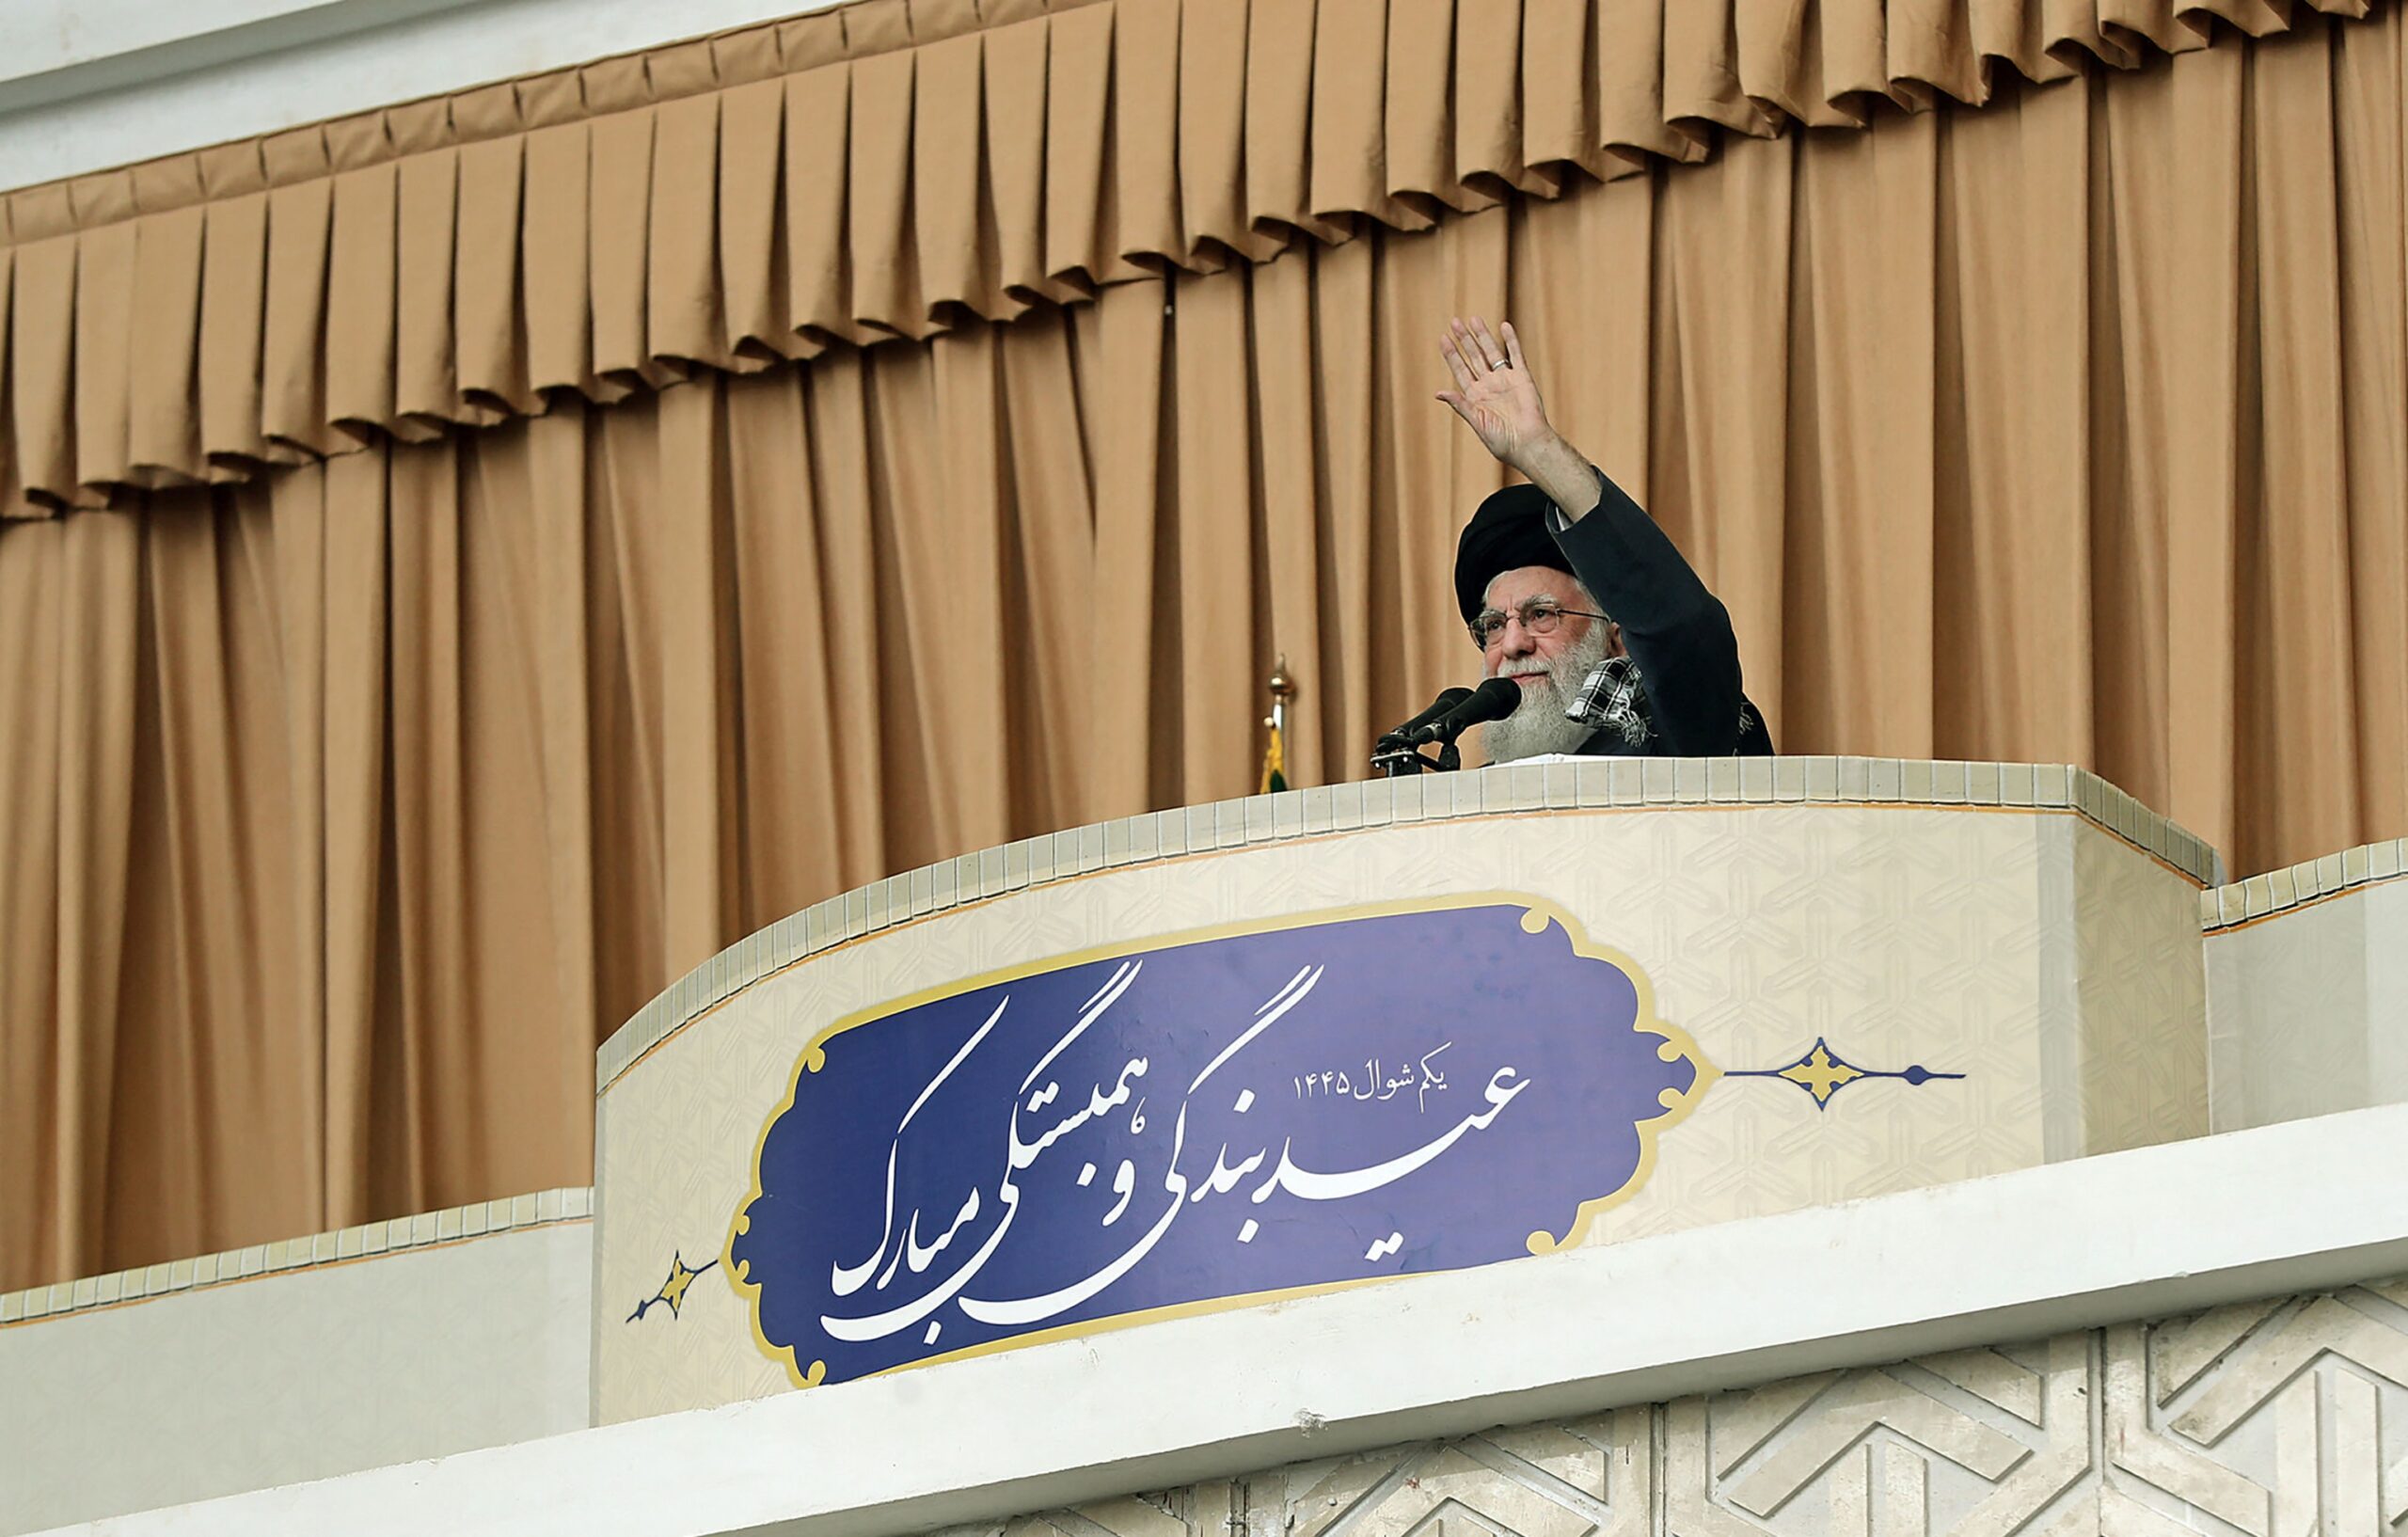 De hoogste leider van Iran, ayatollah Ali Khamenei, zegt in een speech op 12 april dat Israël gestraft zal worden voor de aanslag op het Iraanse consulaat in Syrië, dat Iran als eigen grondgebied beschouwt. 